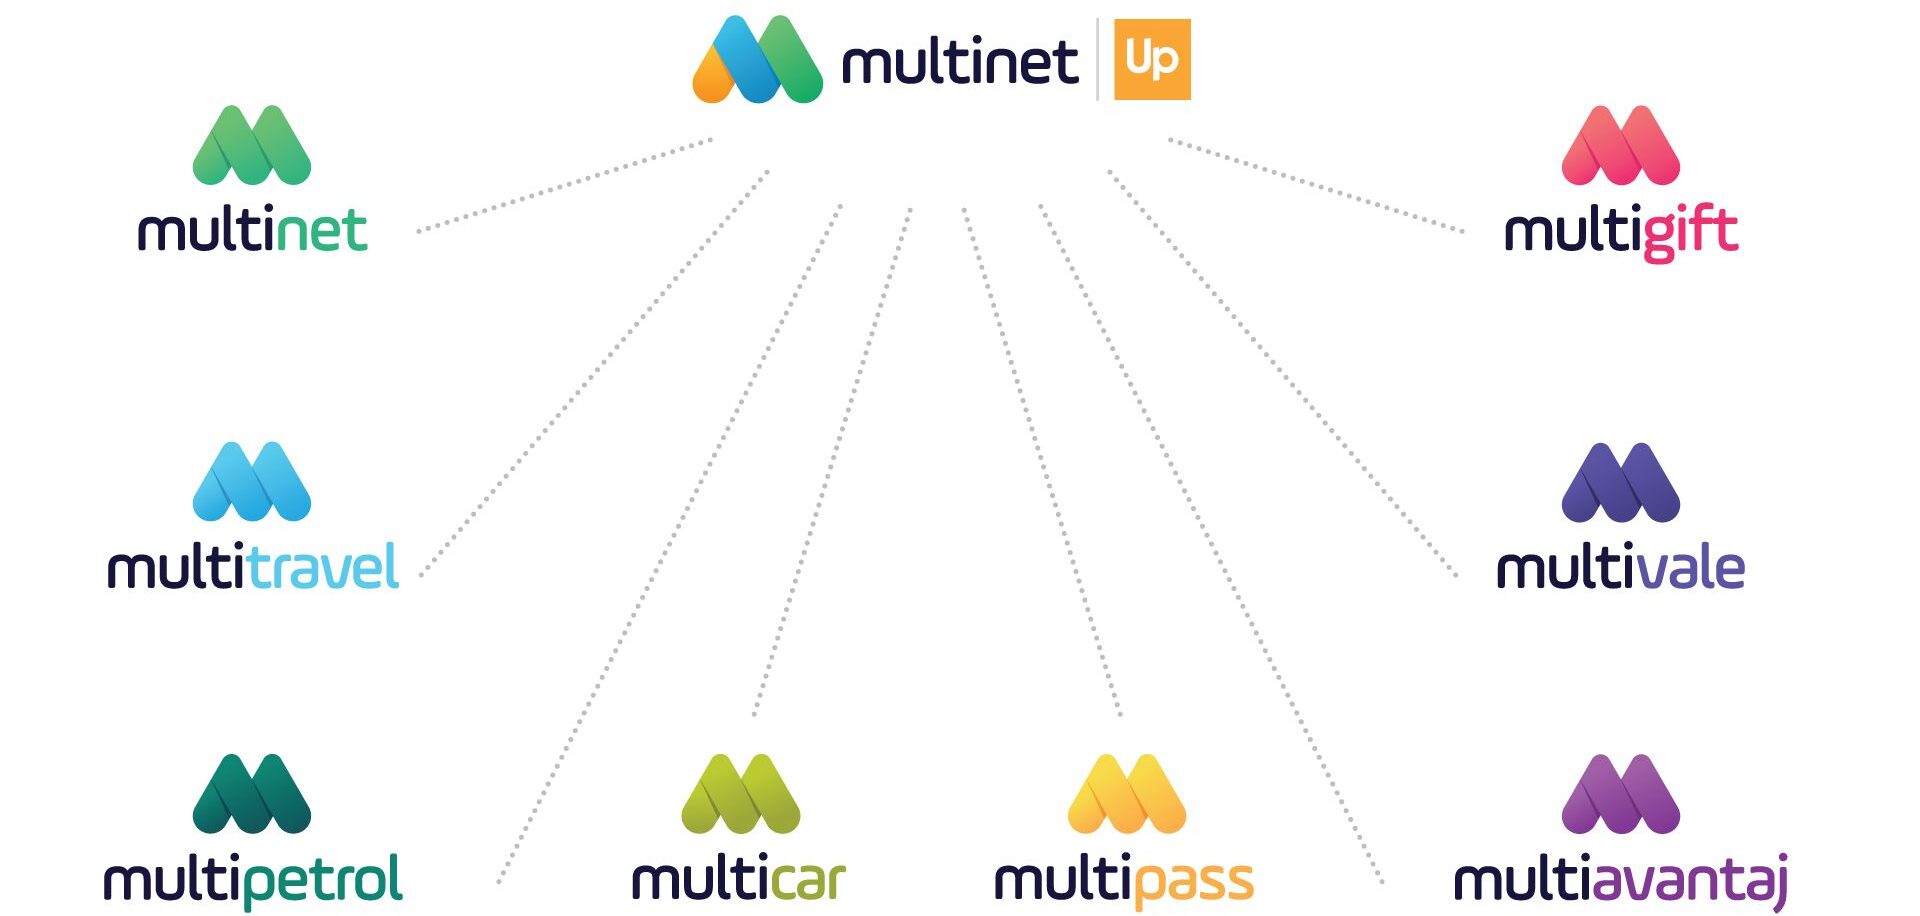 Multinet Up 2023 hedeflerini açıkladı